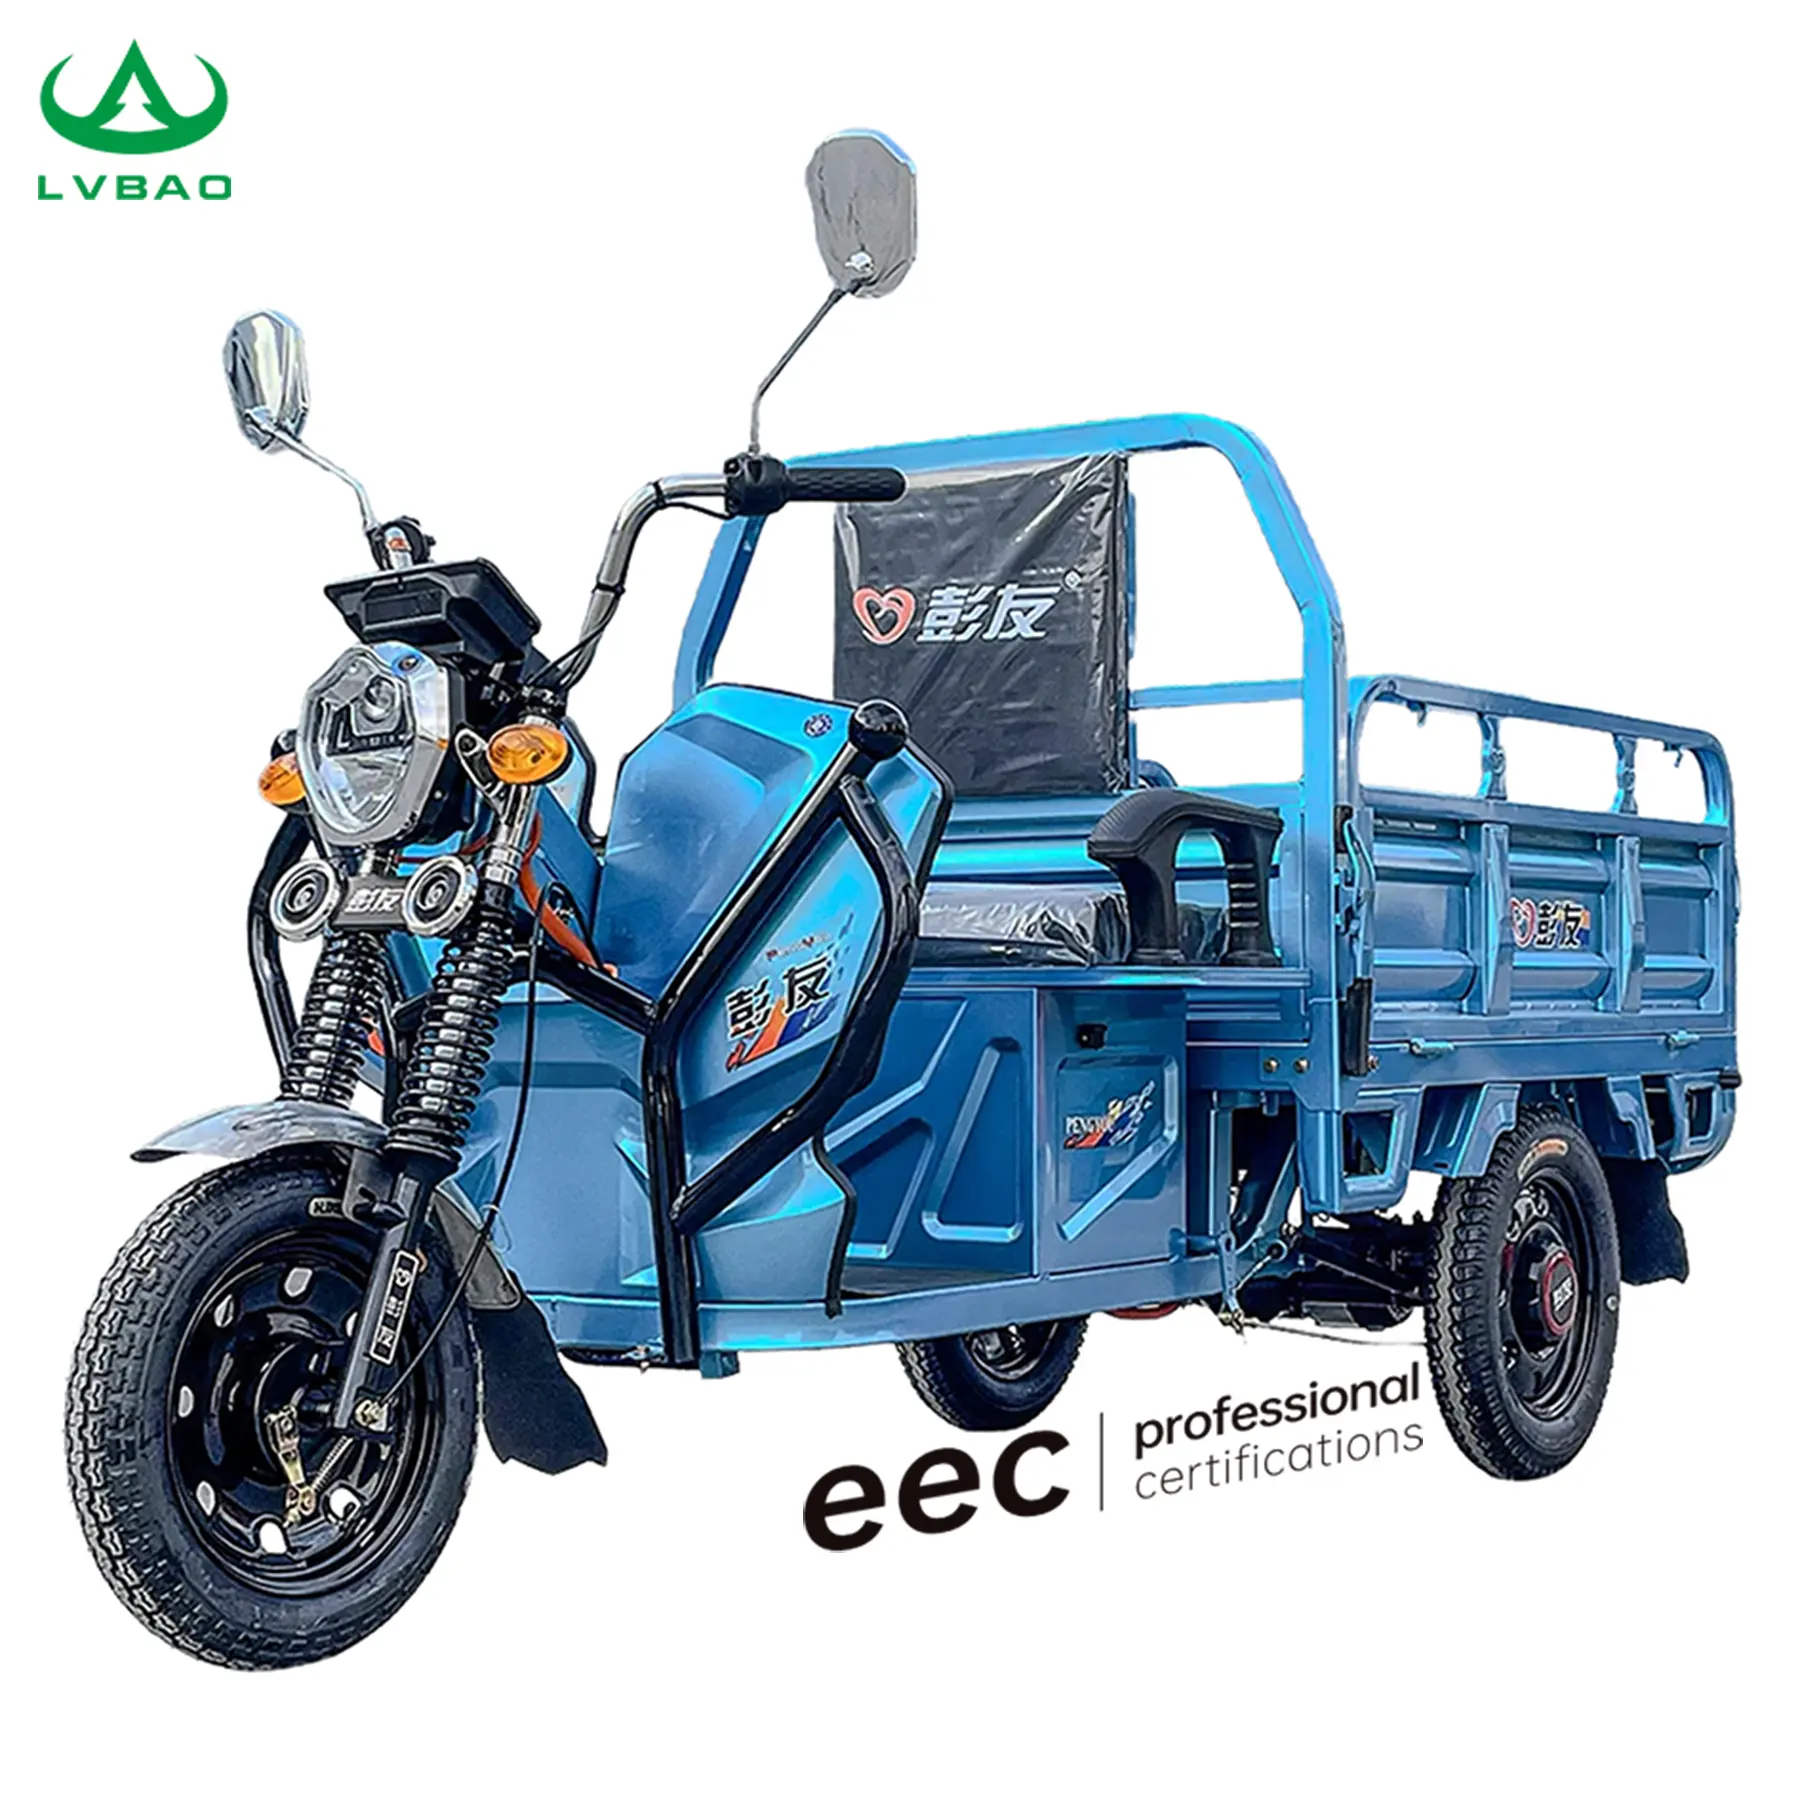 LB-LB130 รถสามล้อบรรทุกสินค้าไฟฟ้าคุณภาพรถจักรยานยนต์สามล้อรถสามล้อ EEC COC ยุโรป Homologation อย่างถูกกฎหมาย